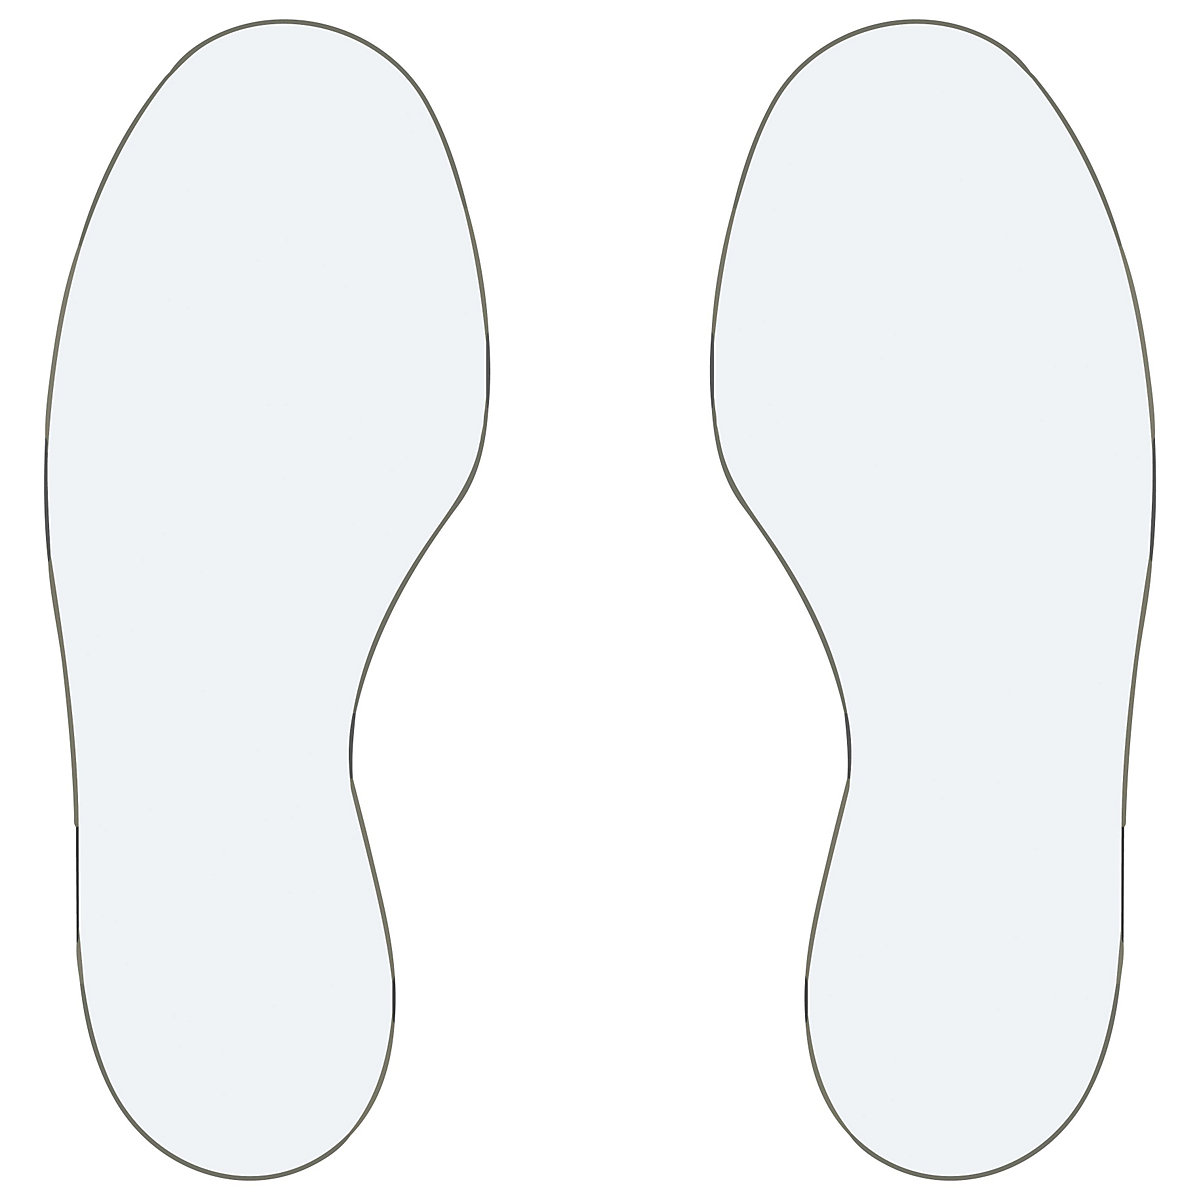 PVC padlójelölések, lábak, 5 jobb / 5 bal láb, cs. e. 10 db, fehér